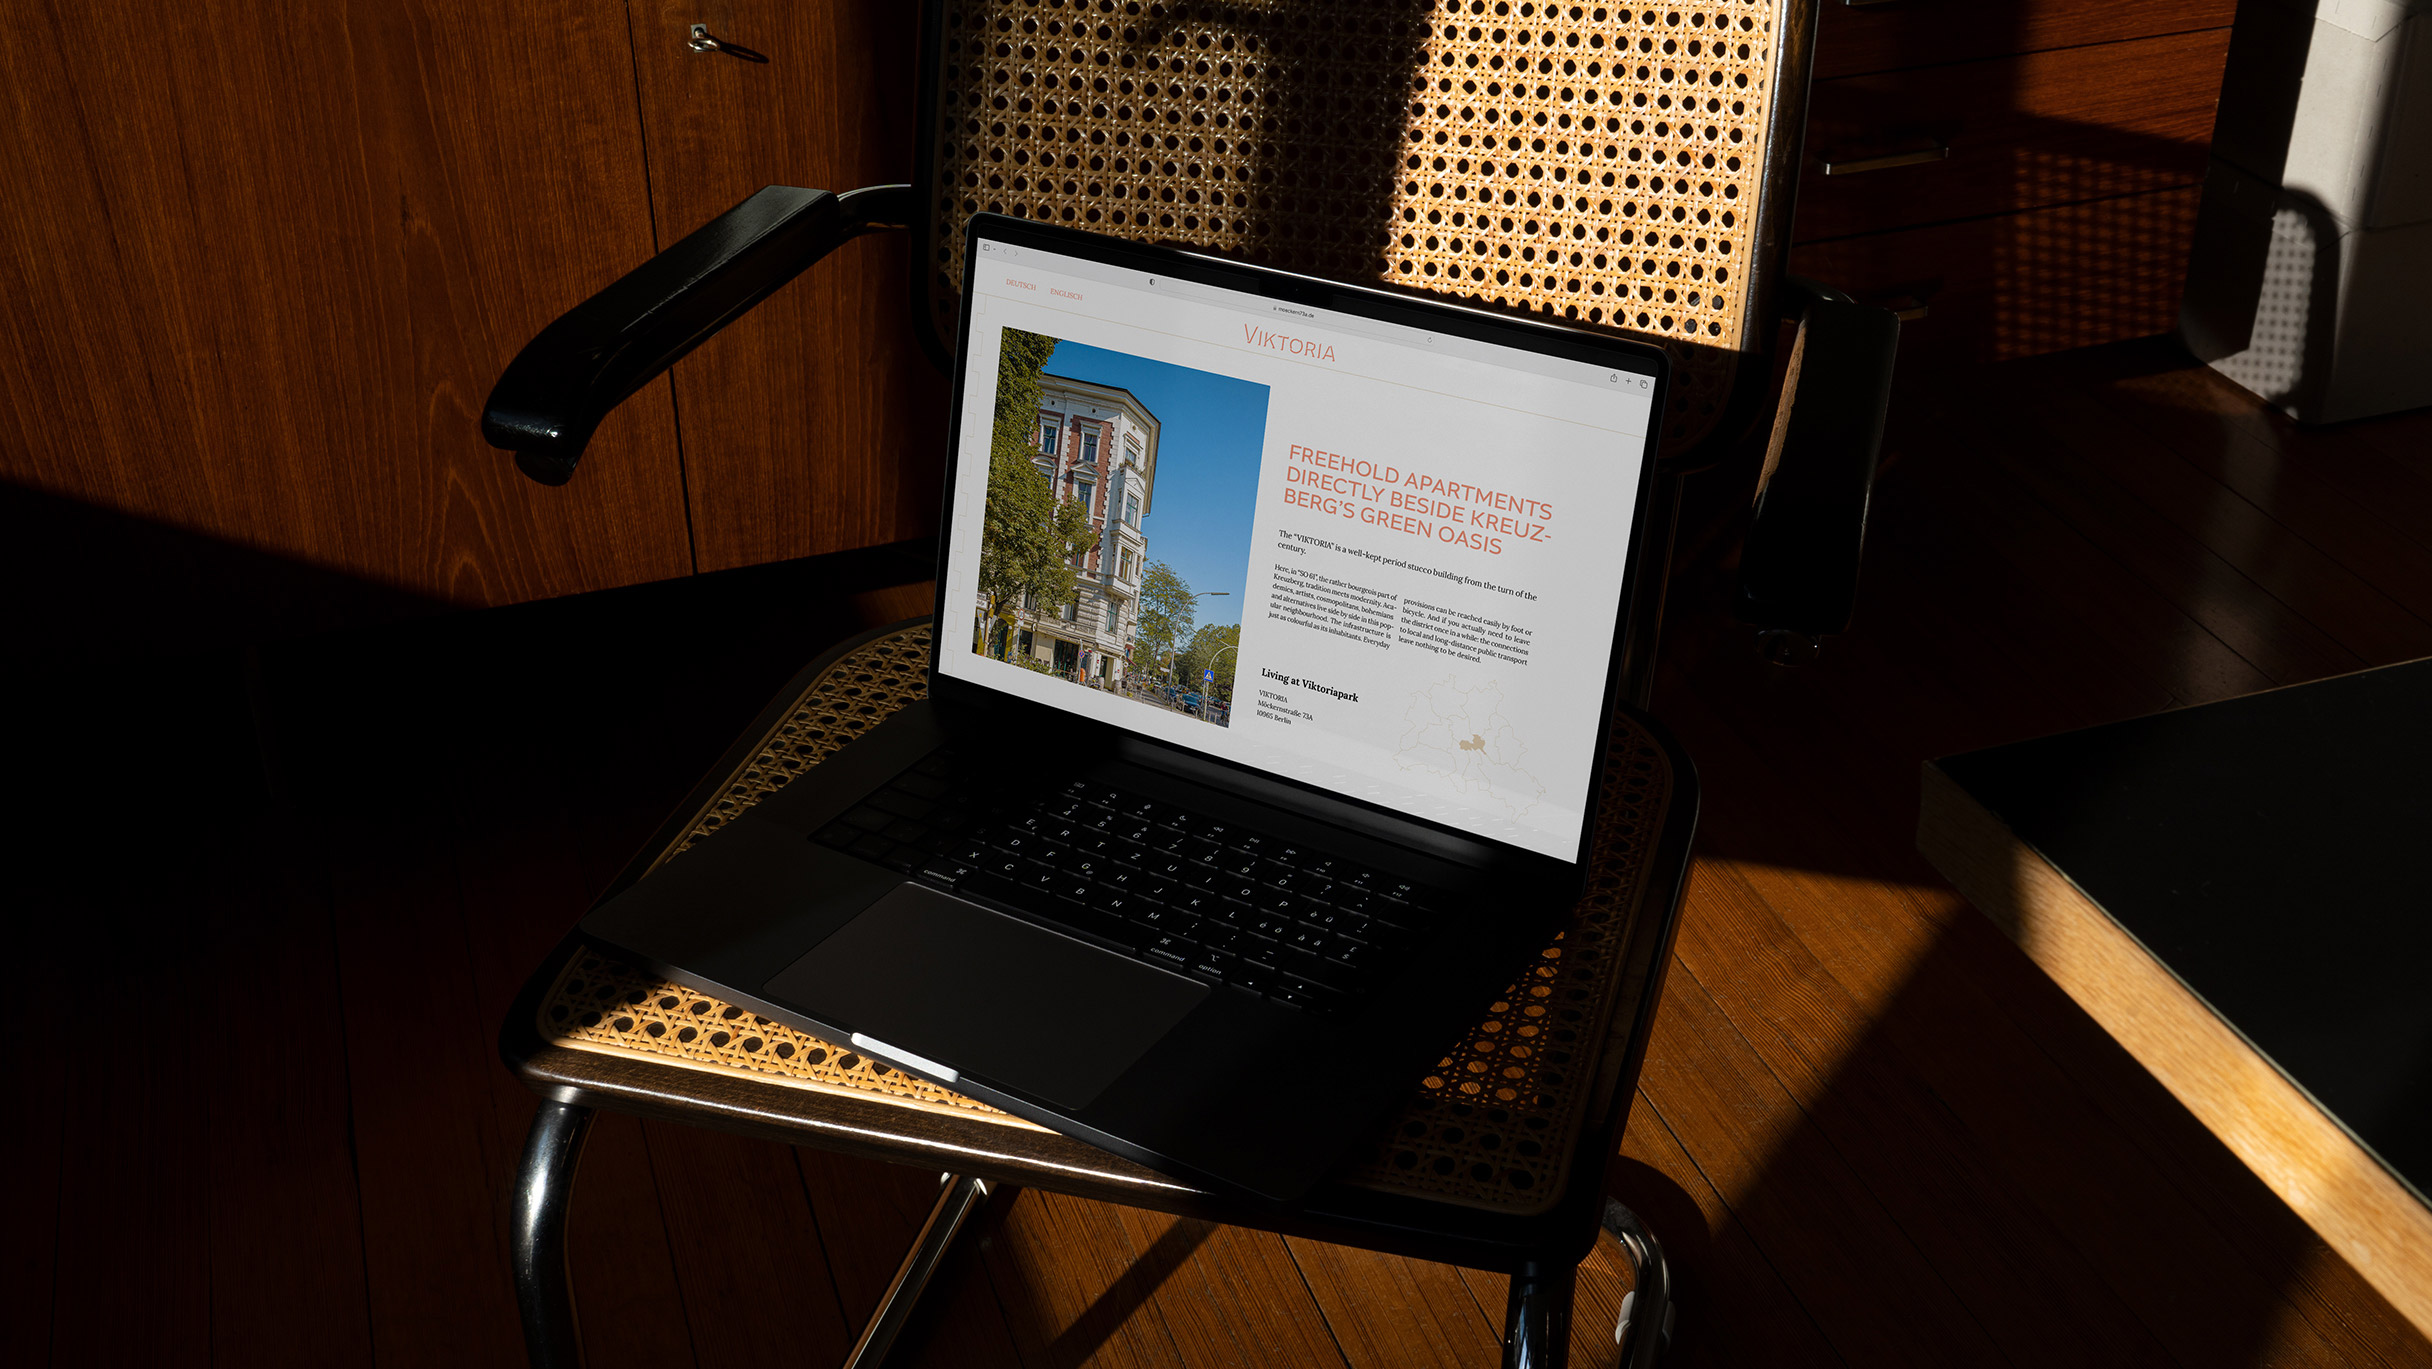 MacBook steht aufgeklappt auf einem korbgeflochtenem Stuhl, auf dem Screen ist ein Auschnitt der "Viktoria" Website mit einem Bild der Fassade und einem Text und einer illustrierten Karte über die Nachbarschaft und Lage des Hause